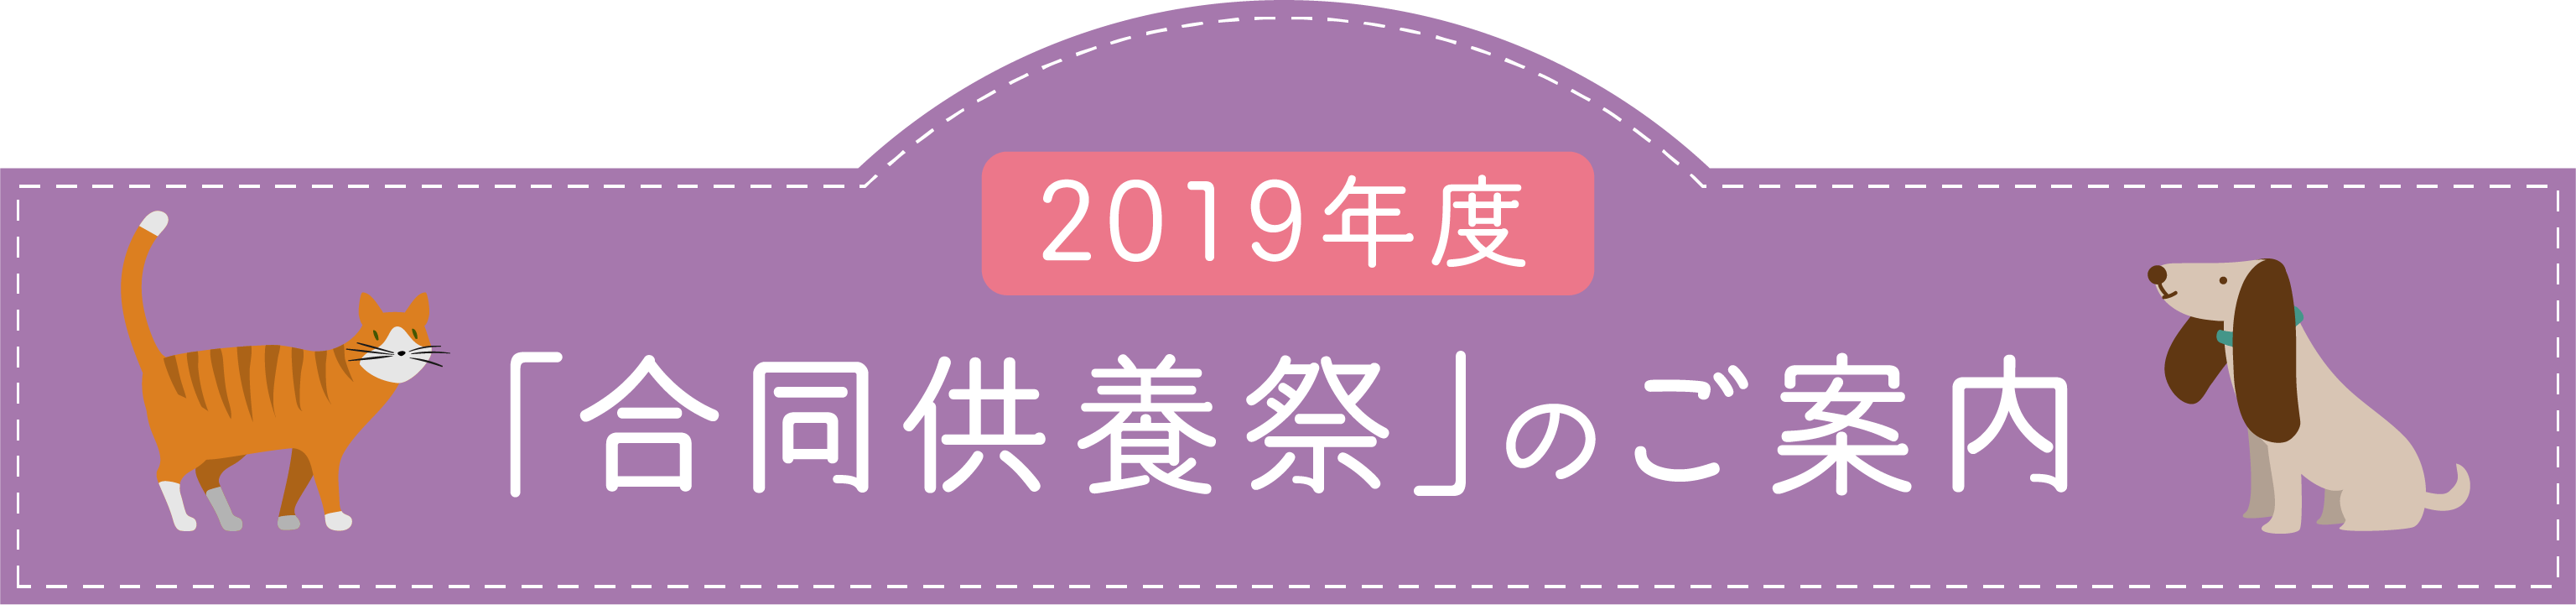 2019年度「合同慰霊祭」